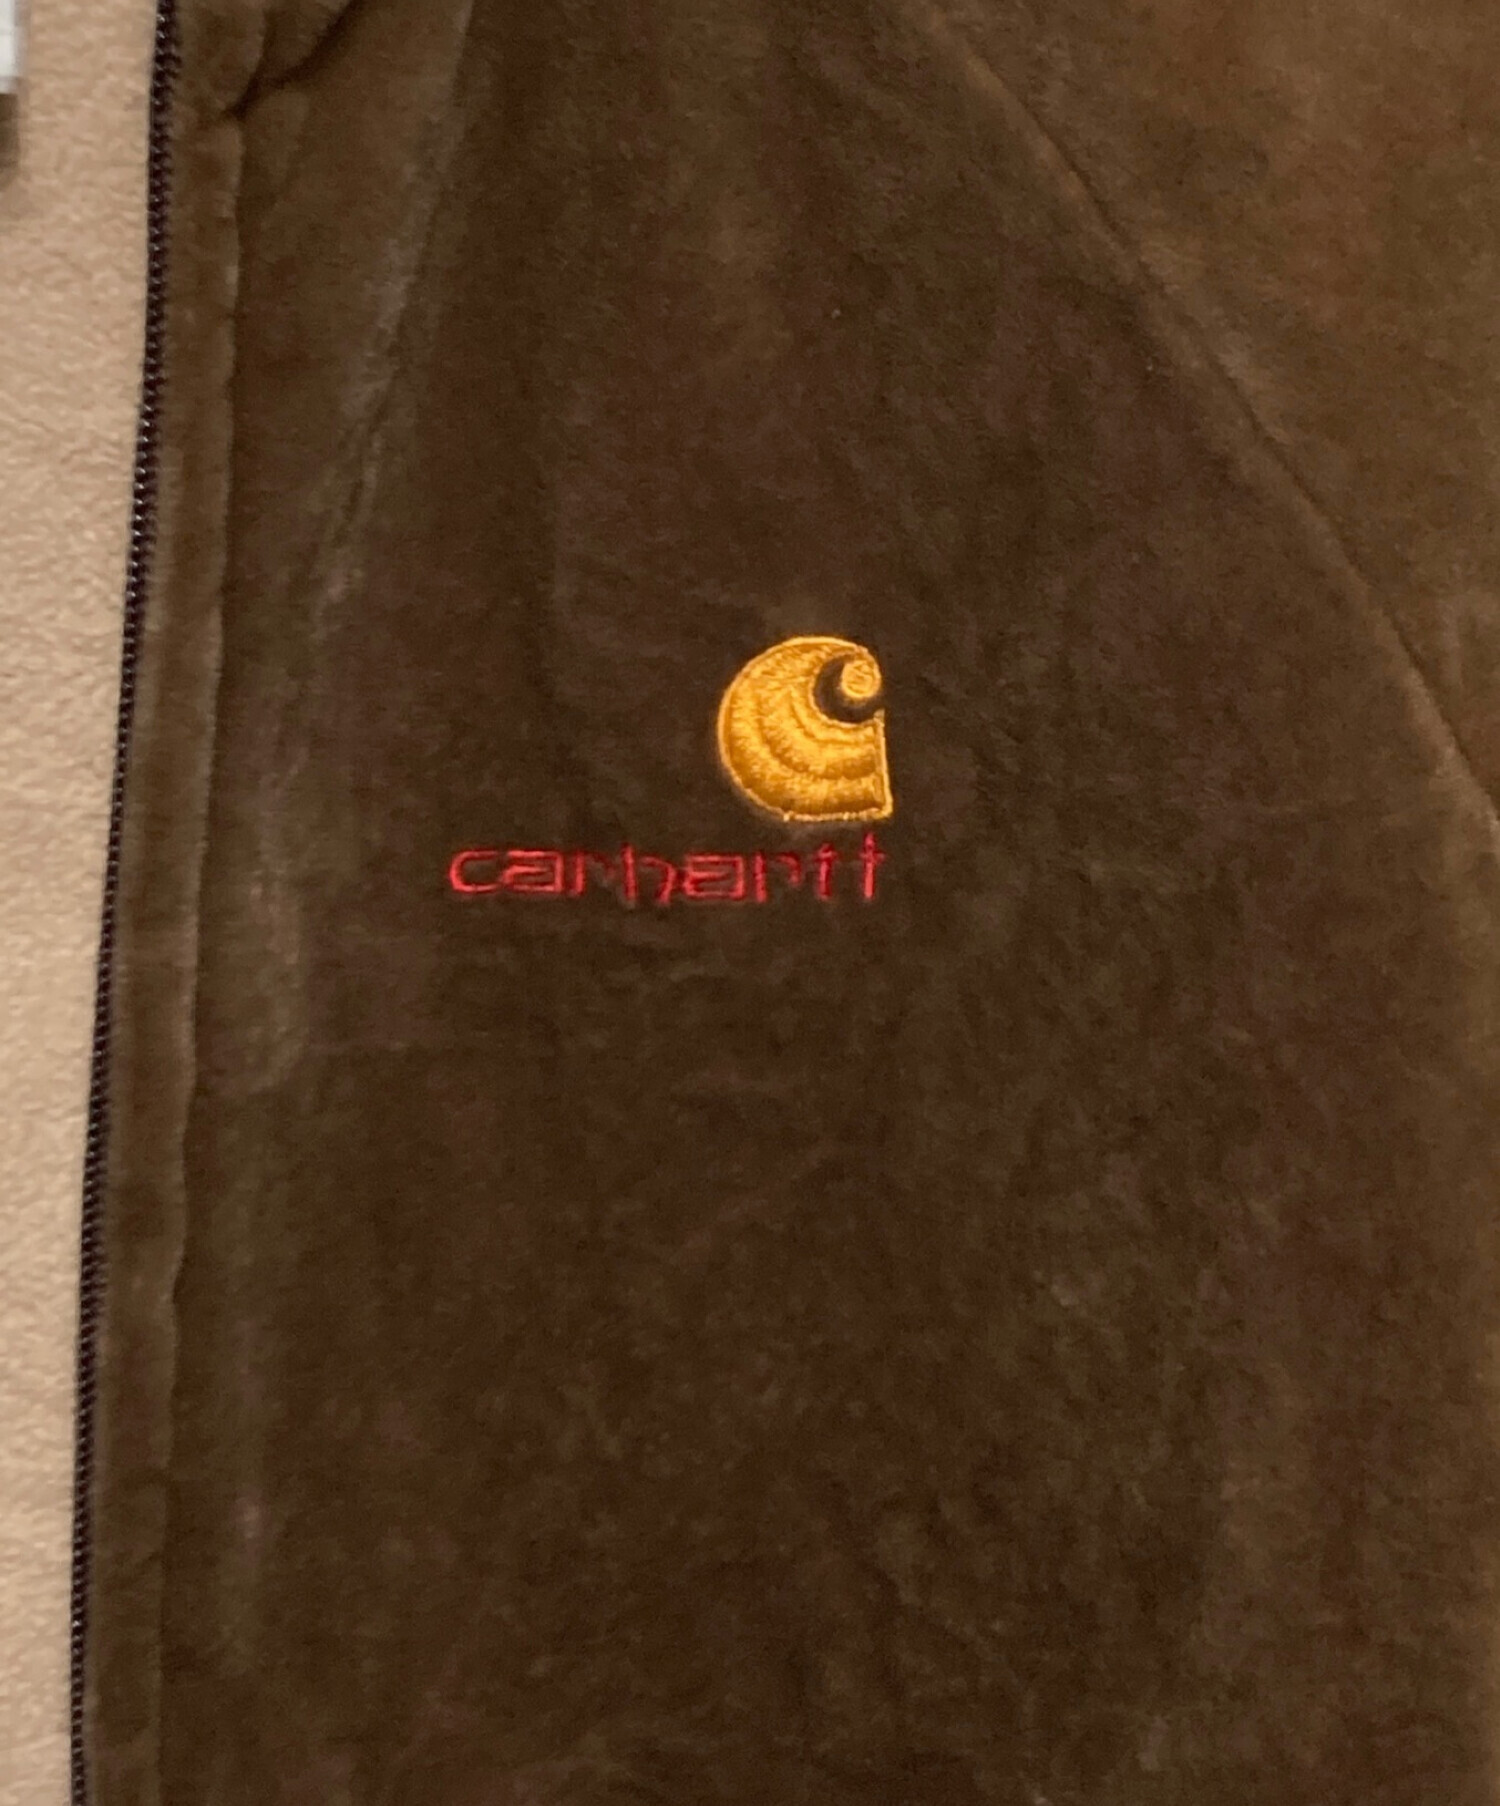 CarHartt (カーハート) ベロアトラックジャケット ブラウン サイズ:M